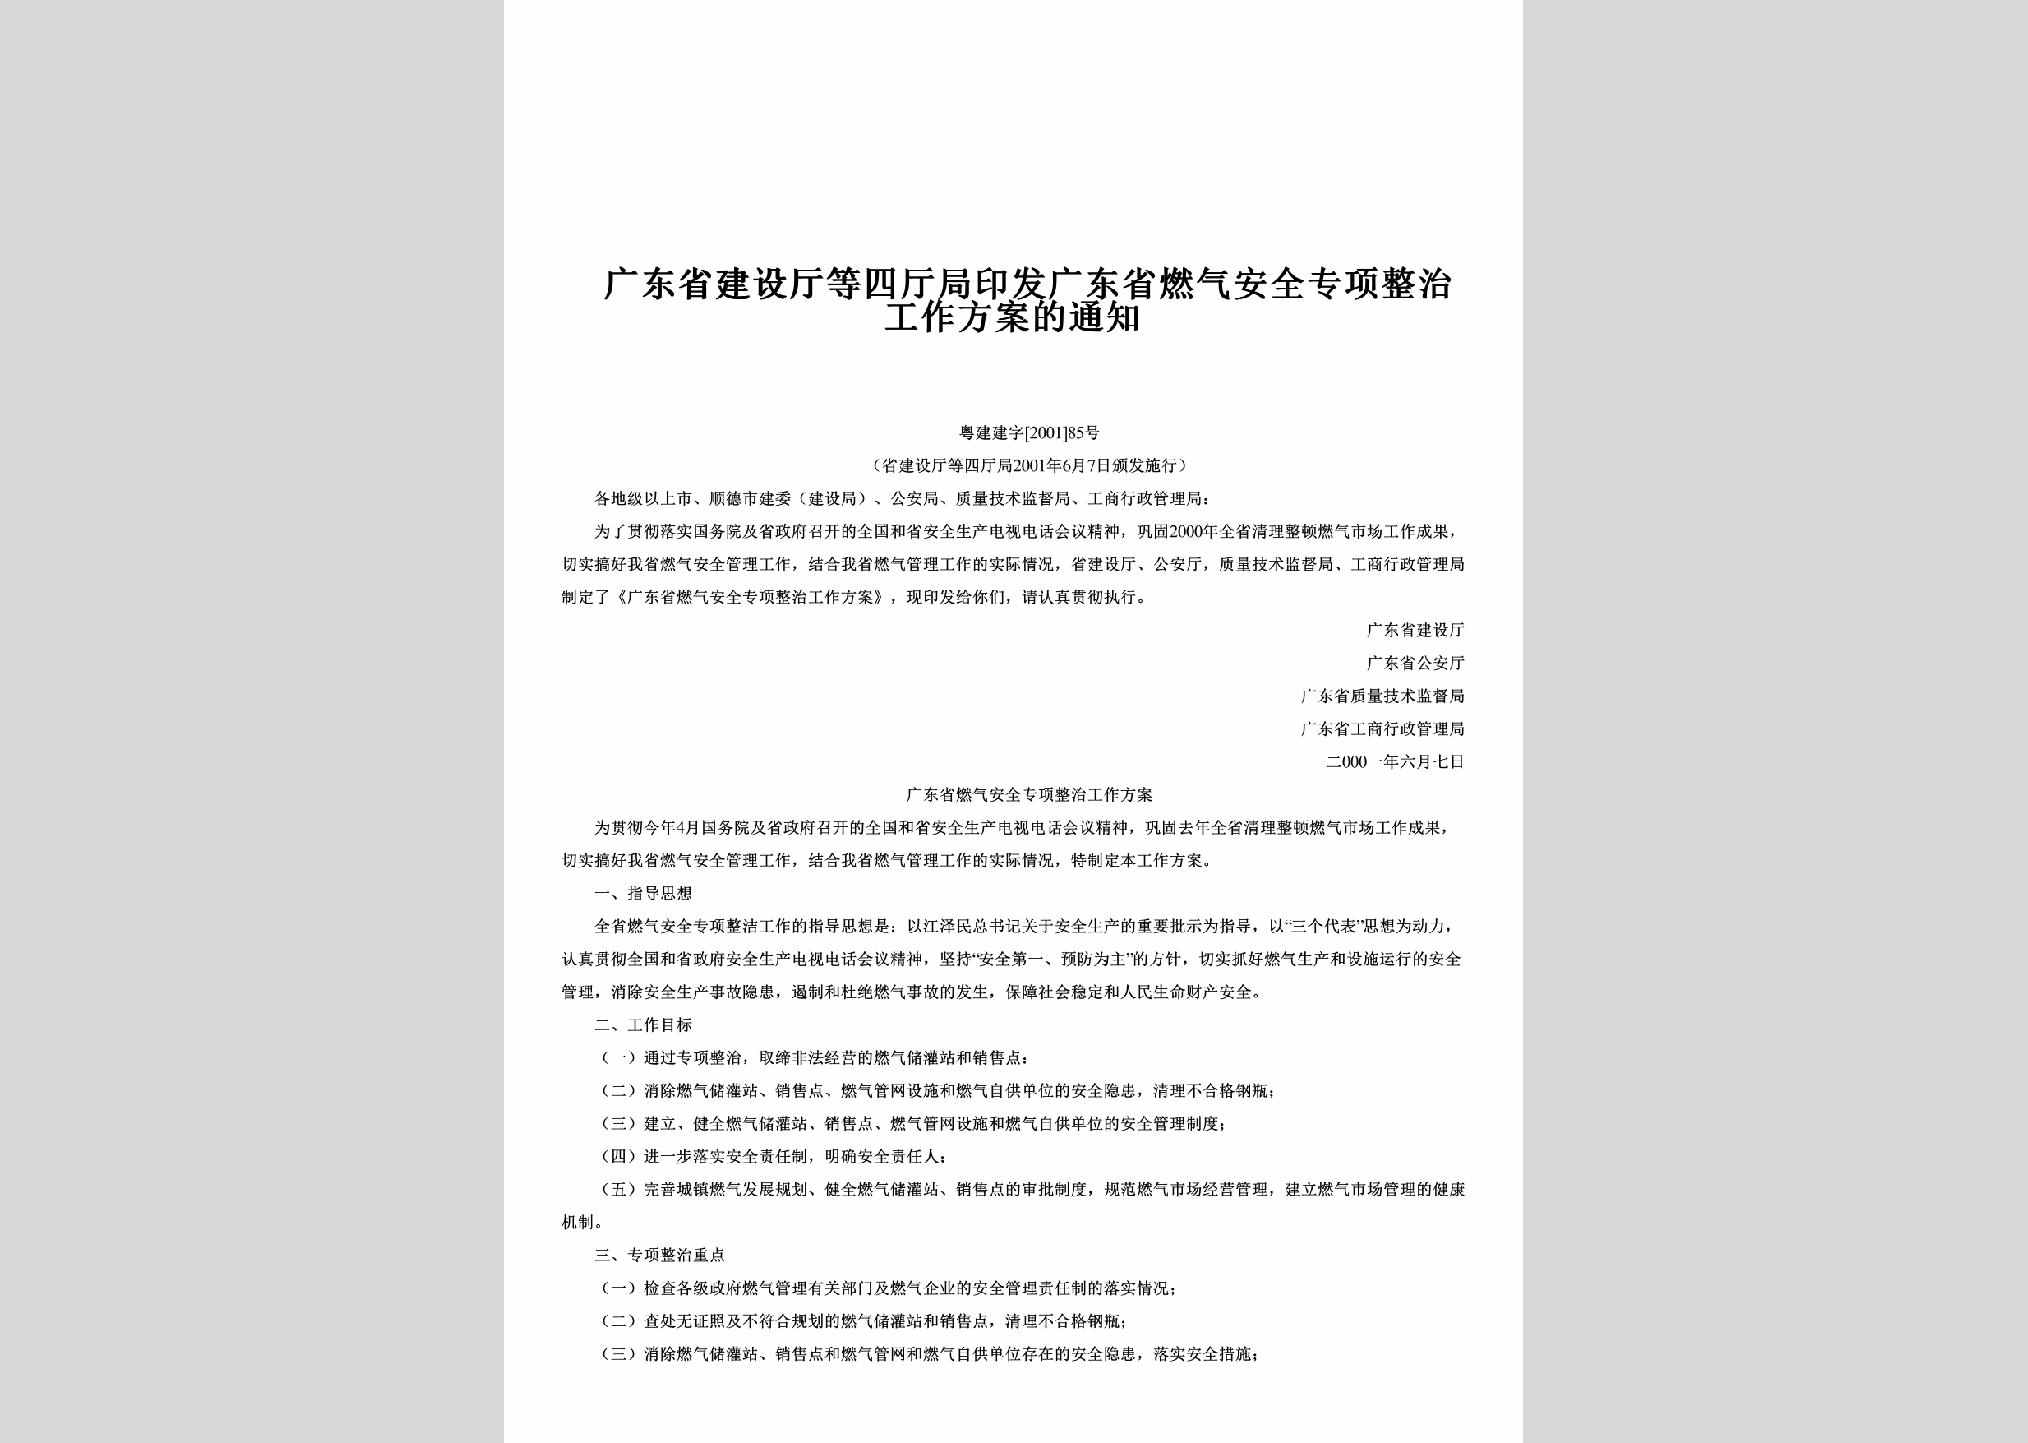 粤建建字[2001]85号：印发广东省燃气安全专项整治工作方案的通知